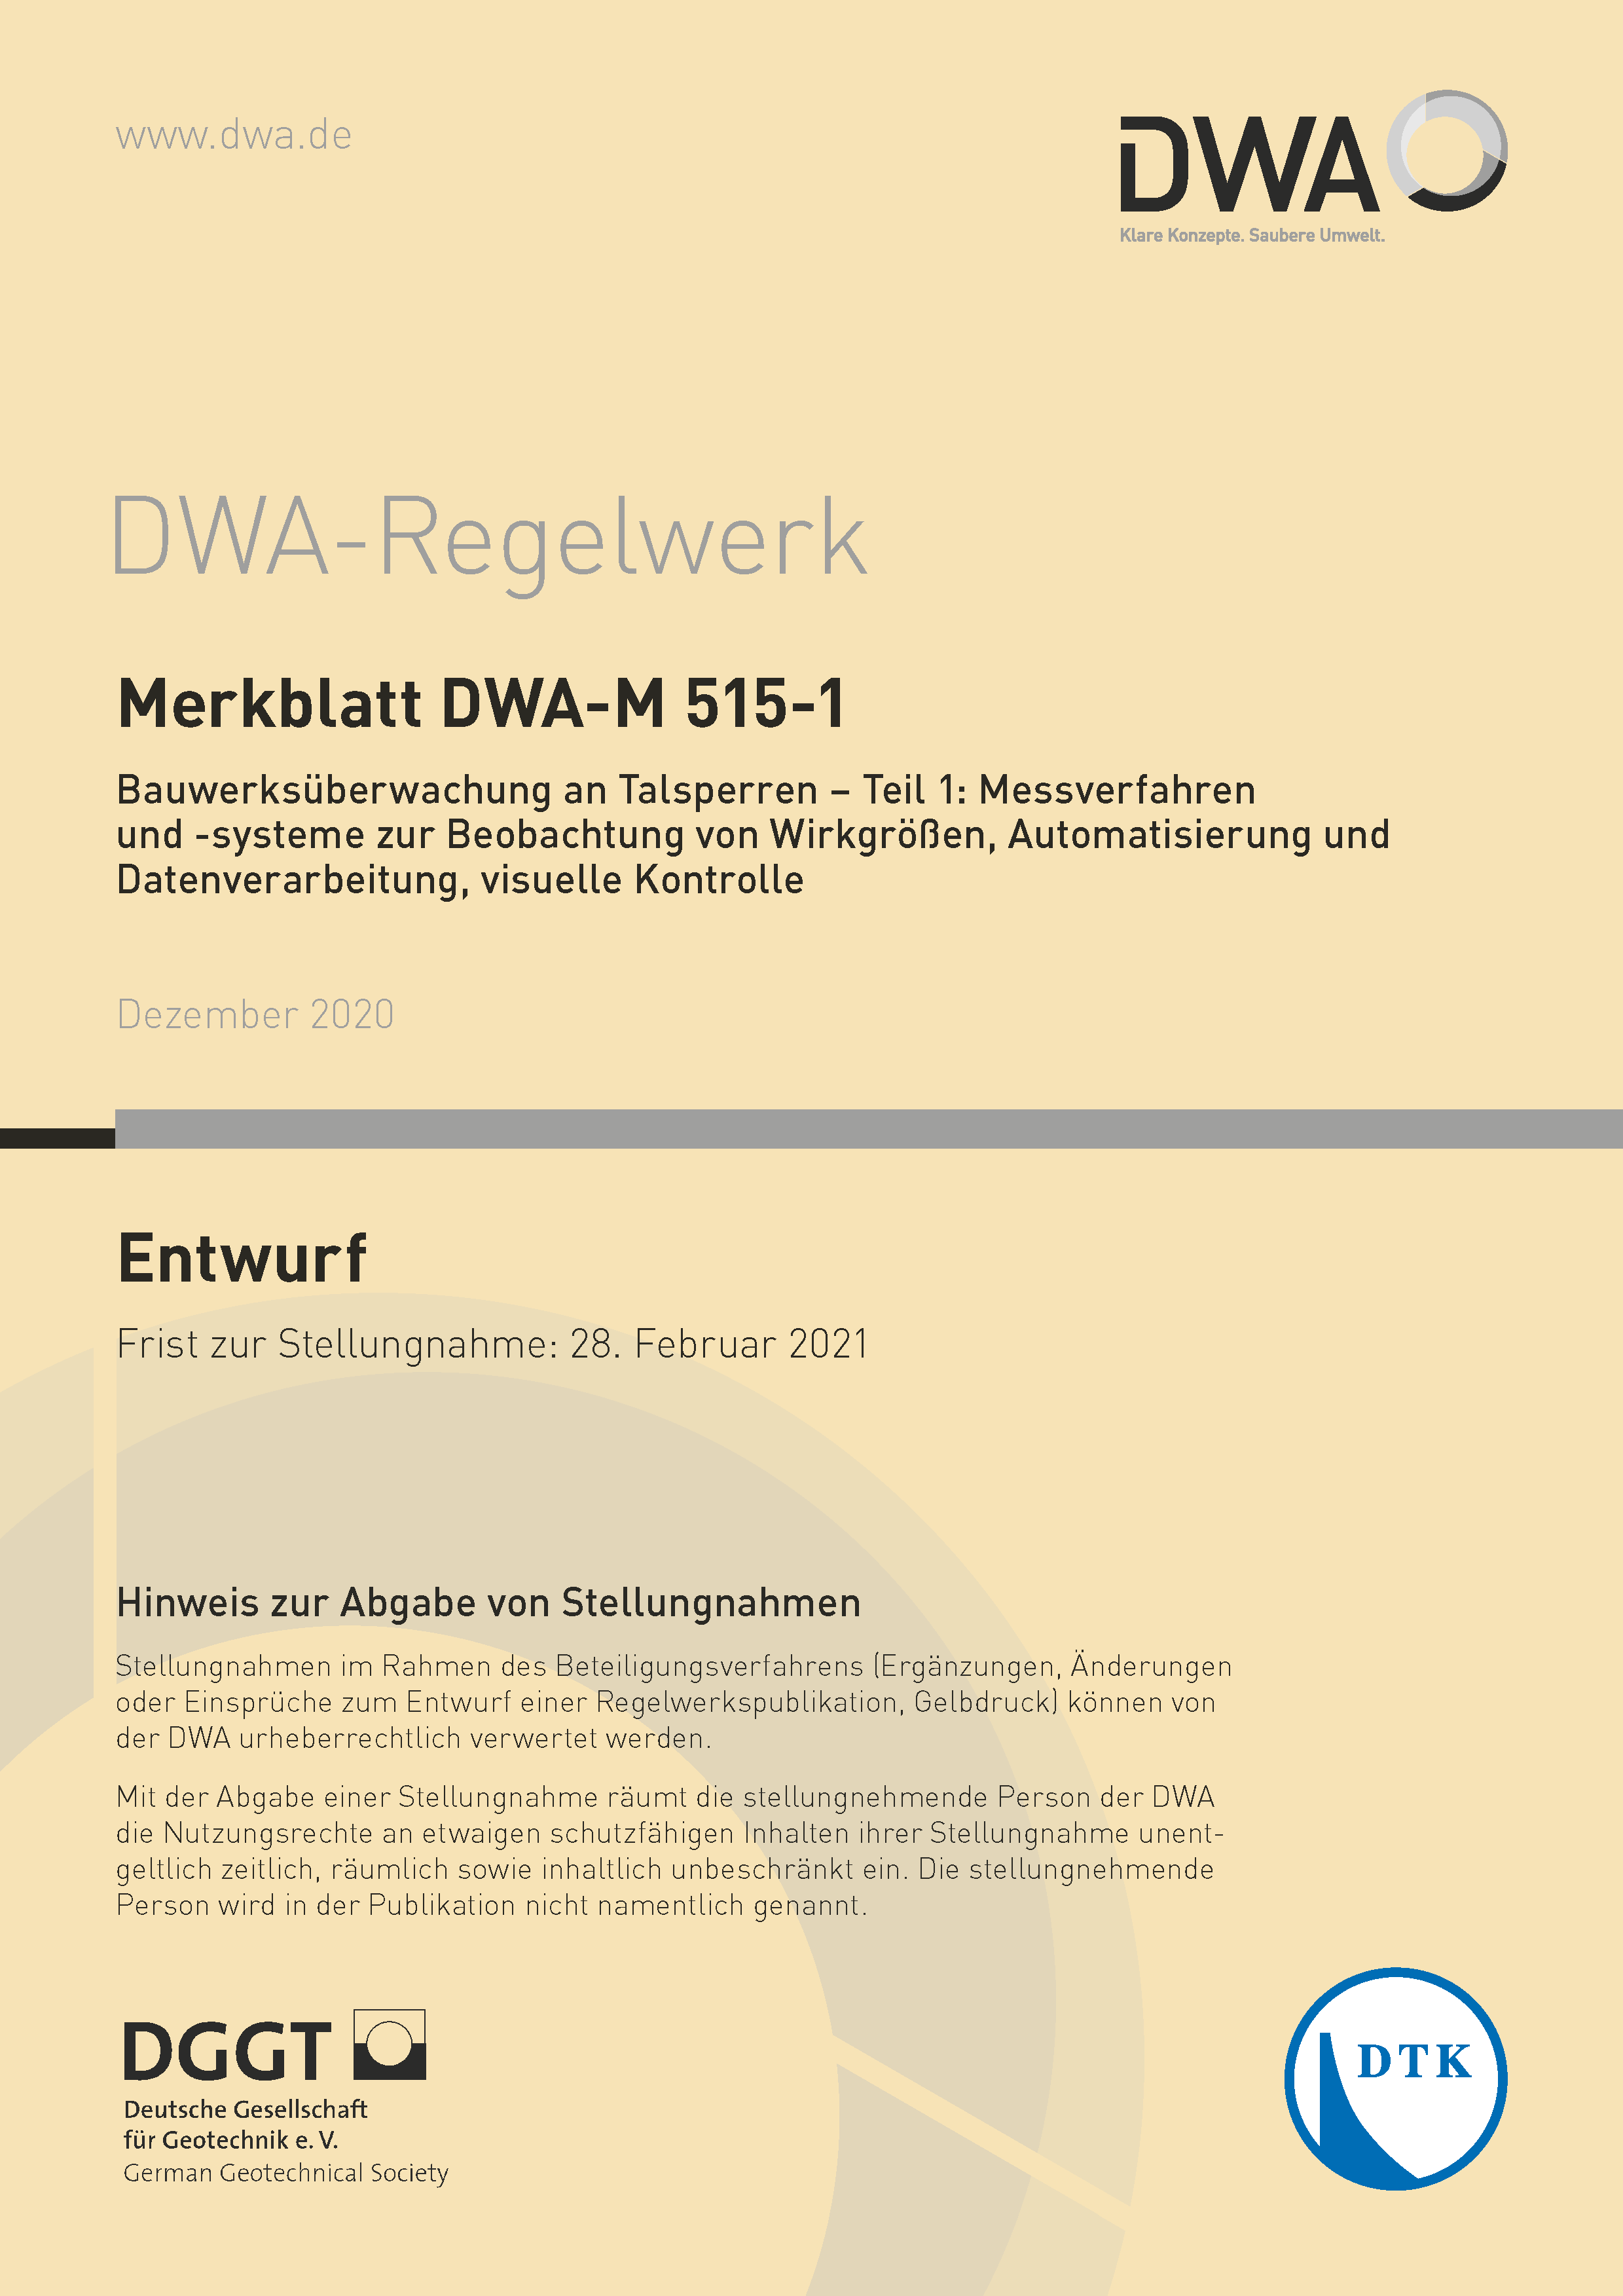 DWA-M 515-1 - Bauwerksüberwachung an Talsperren - Teil 1: Messverfahren und -systeme zur Beobachtung von Wirkgrößen, Automatisierung und Datenverarbeitung, visuelle Kontrolle - Entwurf Dezember 2020